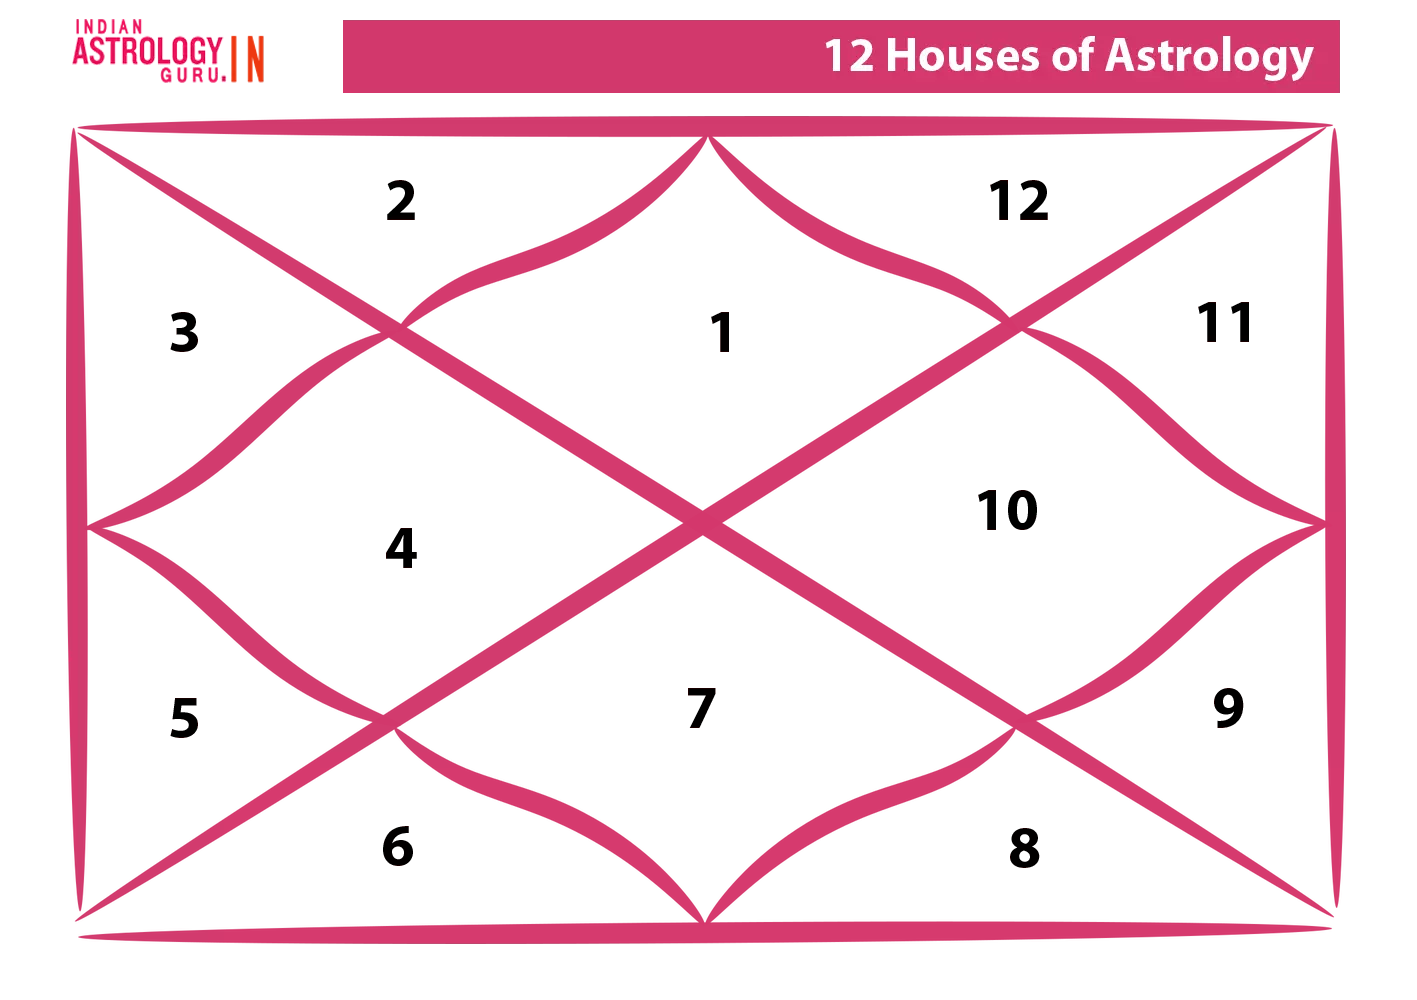 12 astrology housees in Kundli